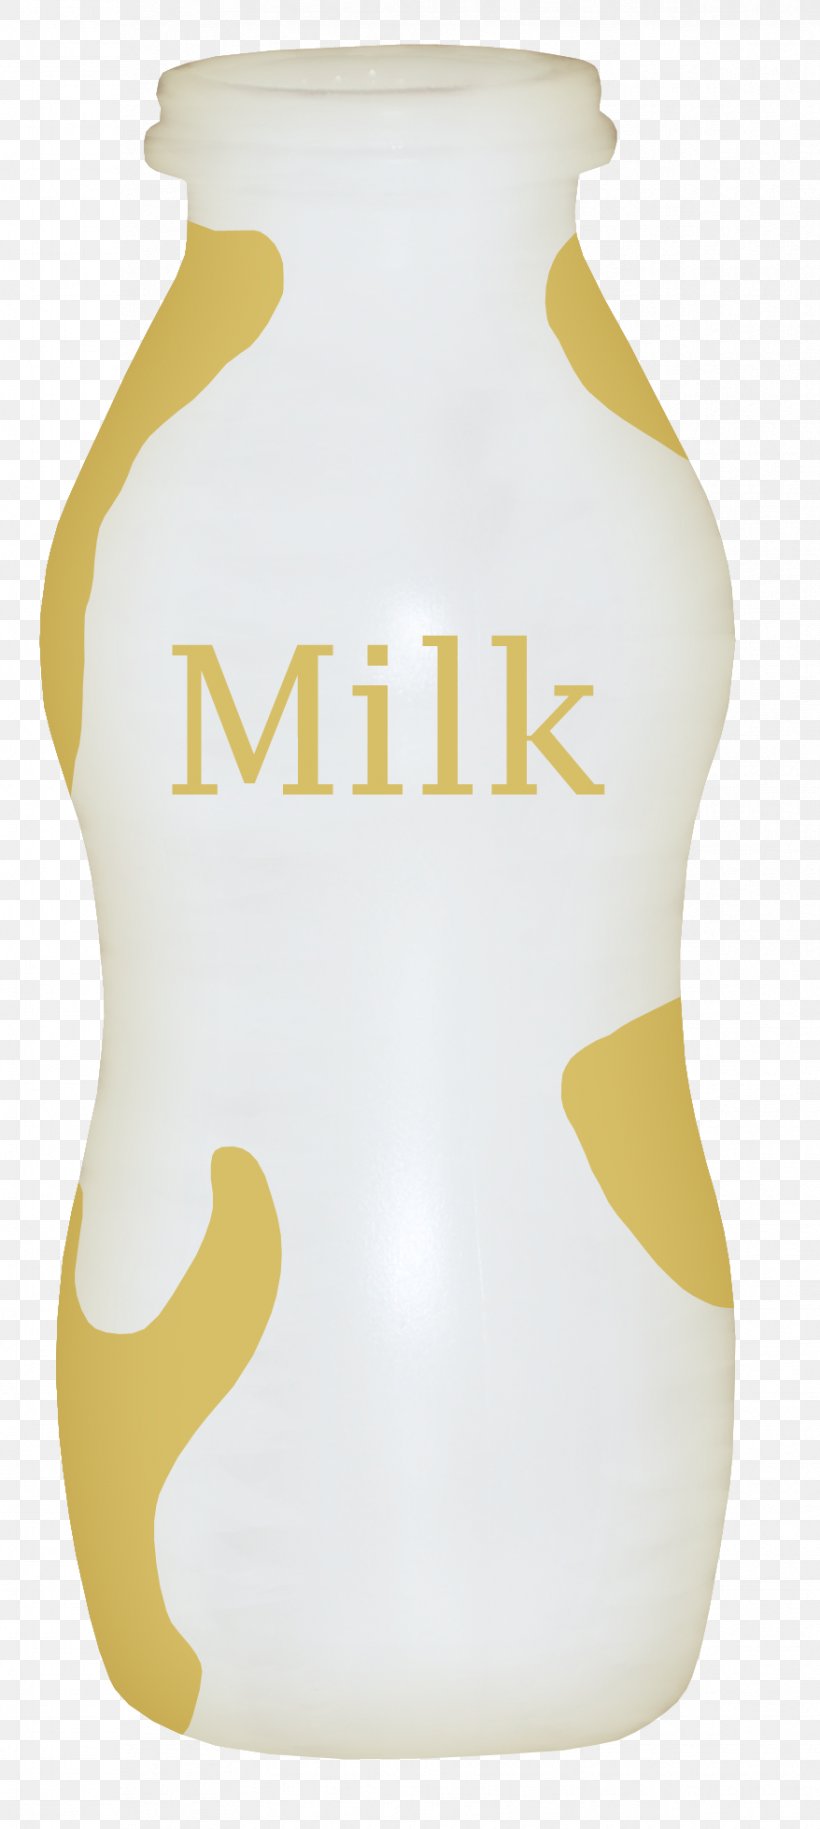 Cows Milk Milk Bottle, PNG, 878x1959px, Milk, Bottle, Cows Milk, Designer, Milk Bottle Download Free